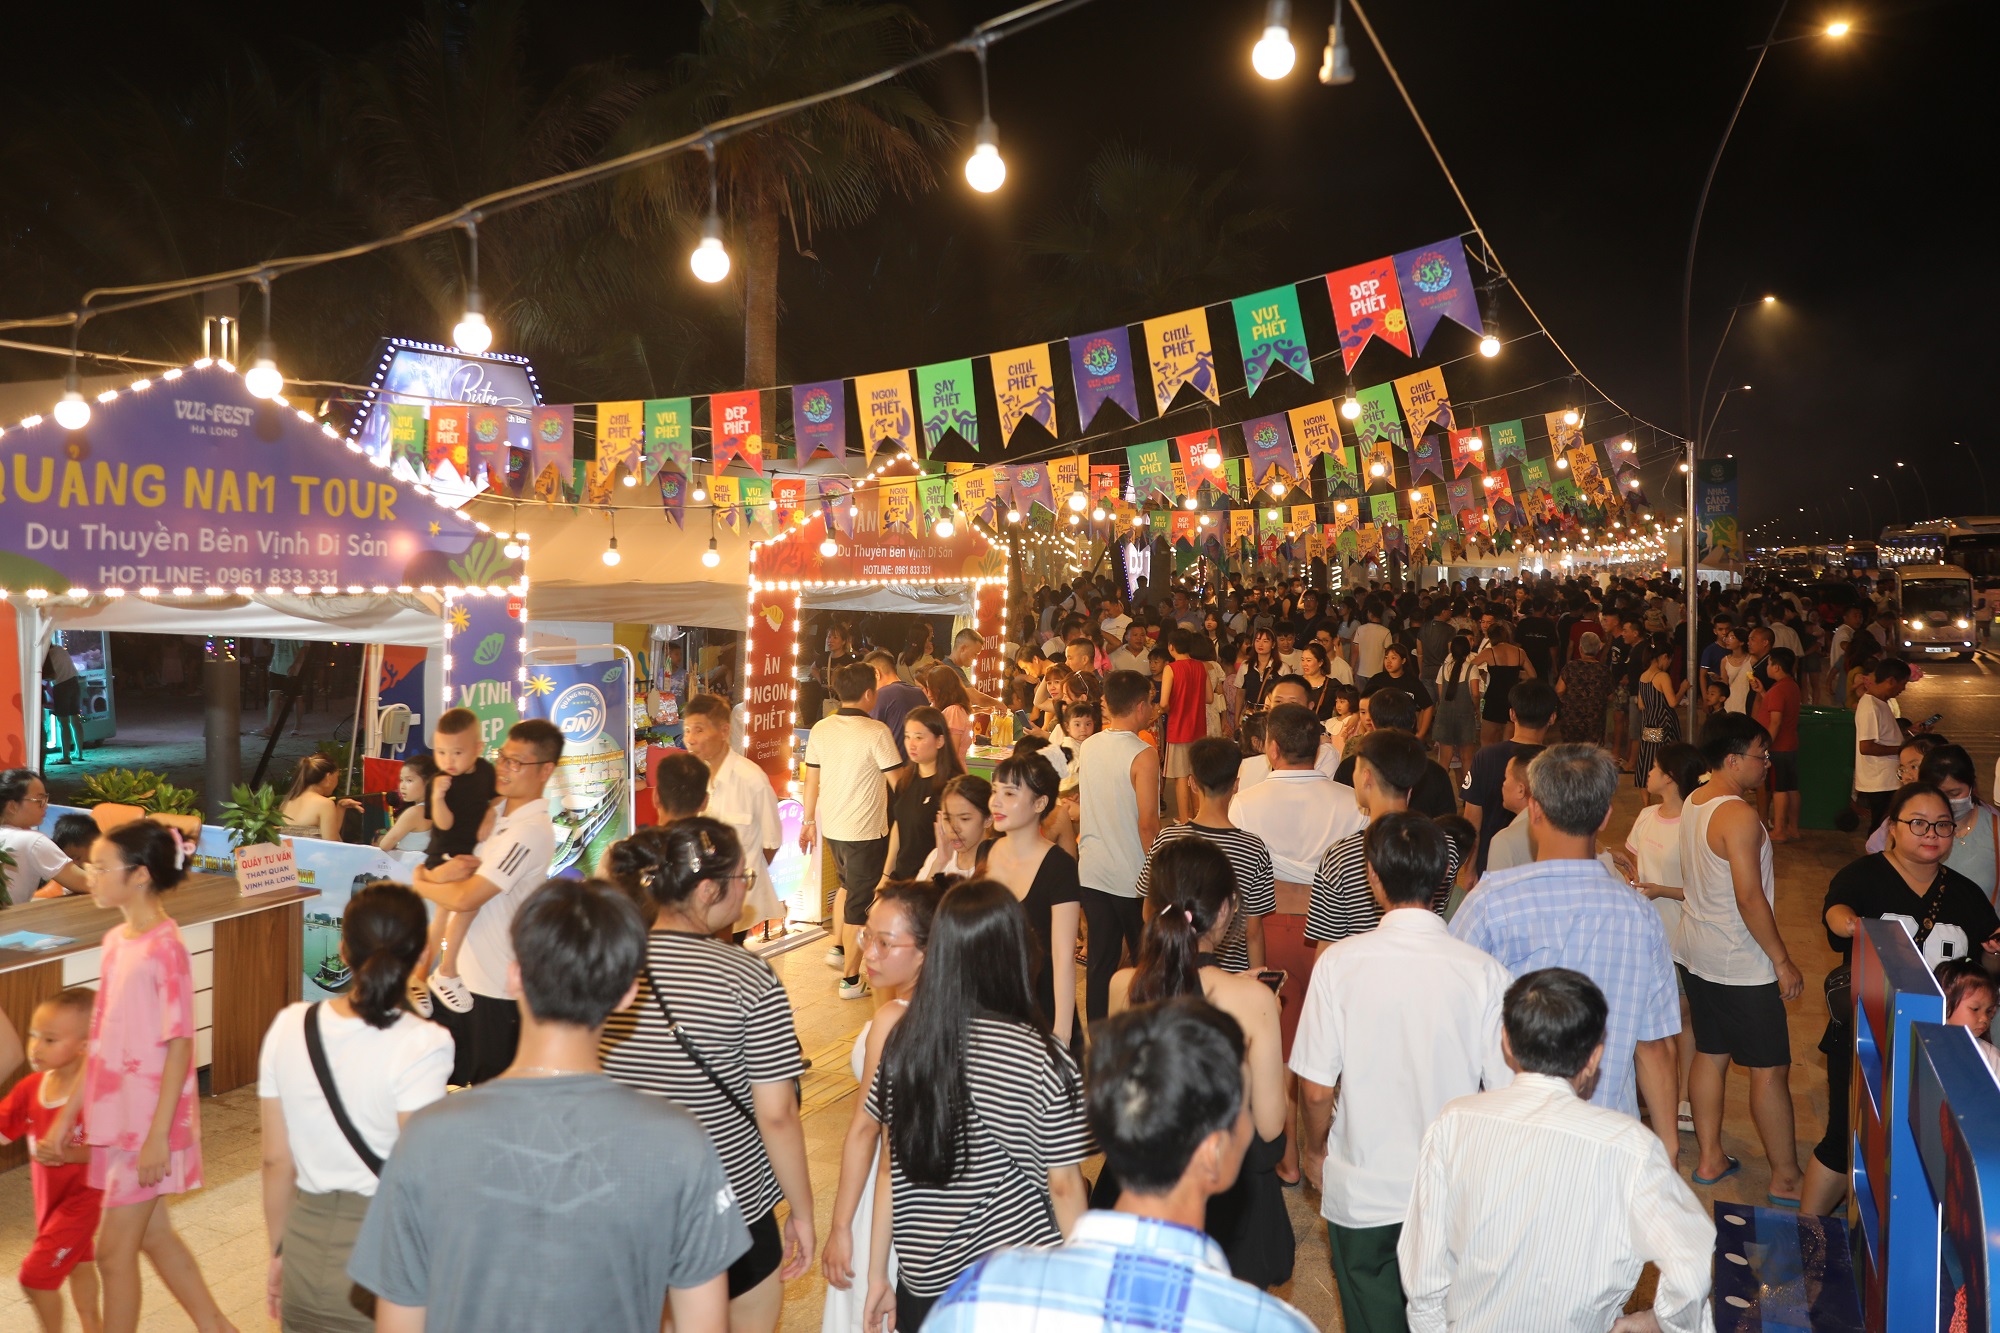 VuiFest Ha Long với mô hình chợ đêm bên biển thu hút hàng vạn du khách trong ngày đầu khai trương 29/6